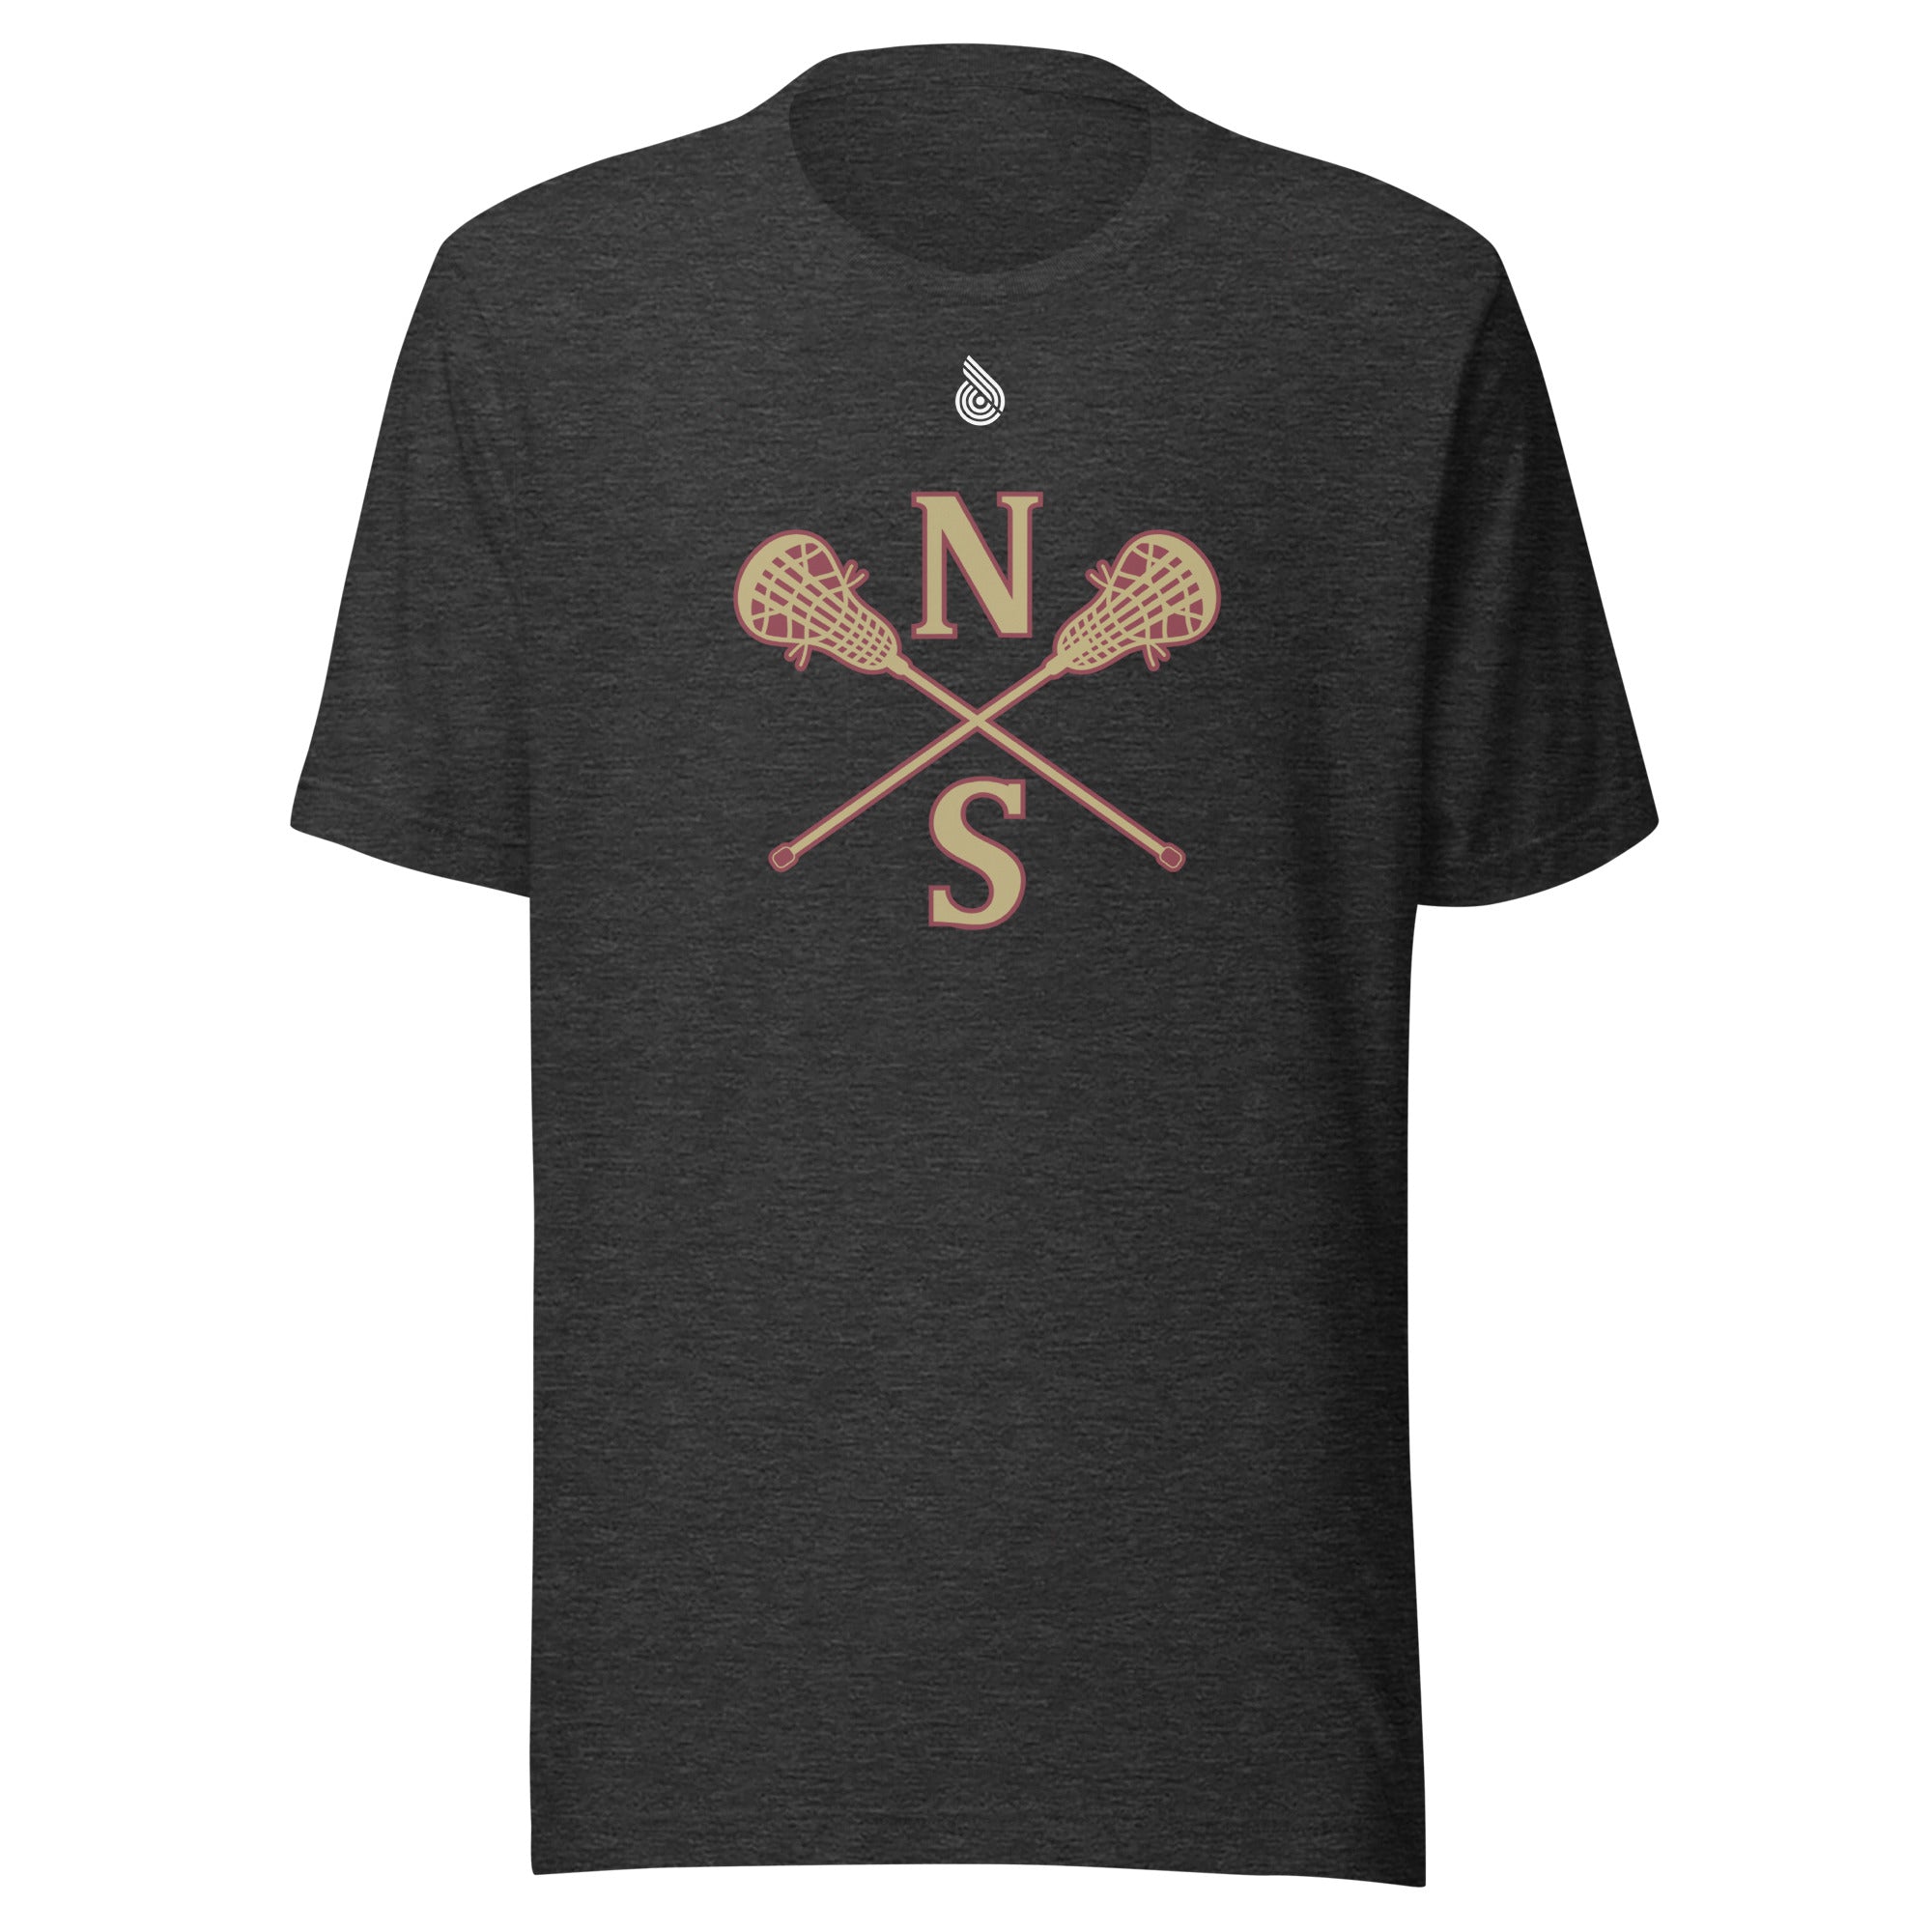 N-S Unisex t-shirt (Girls Logos)